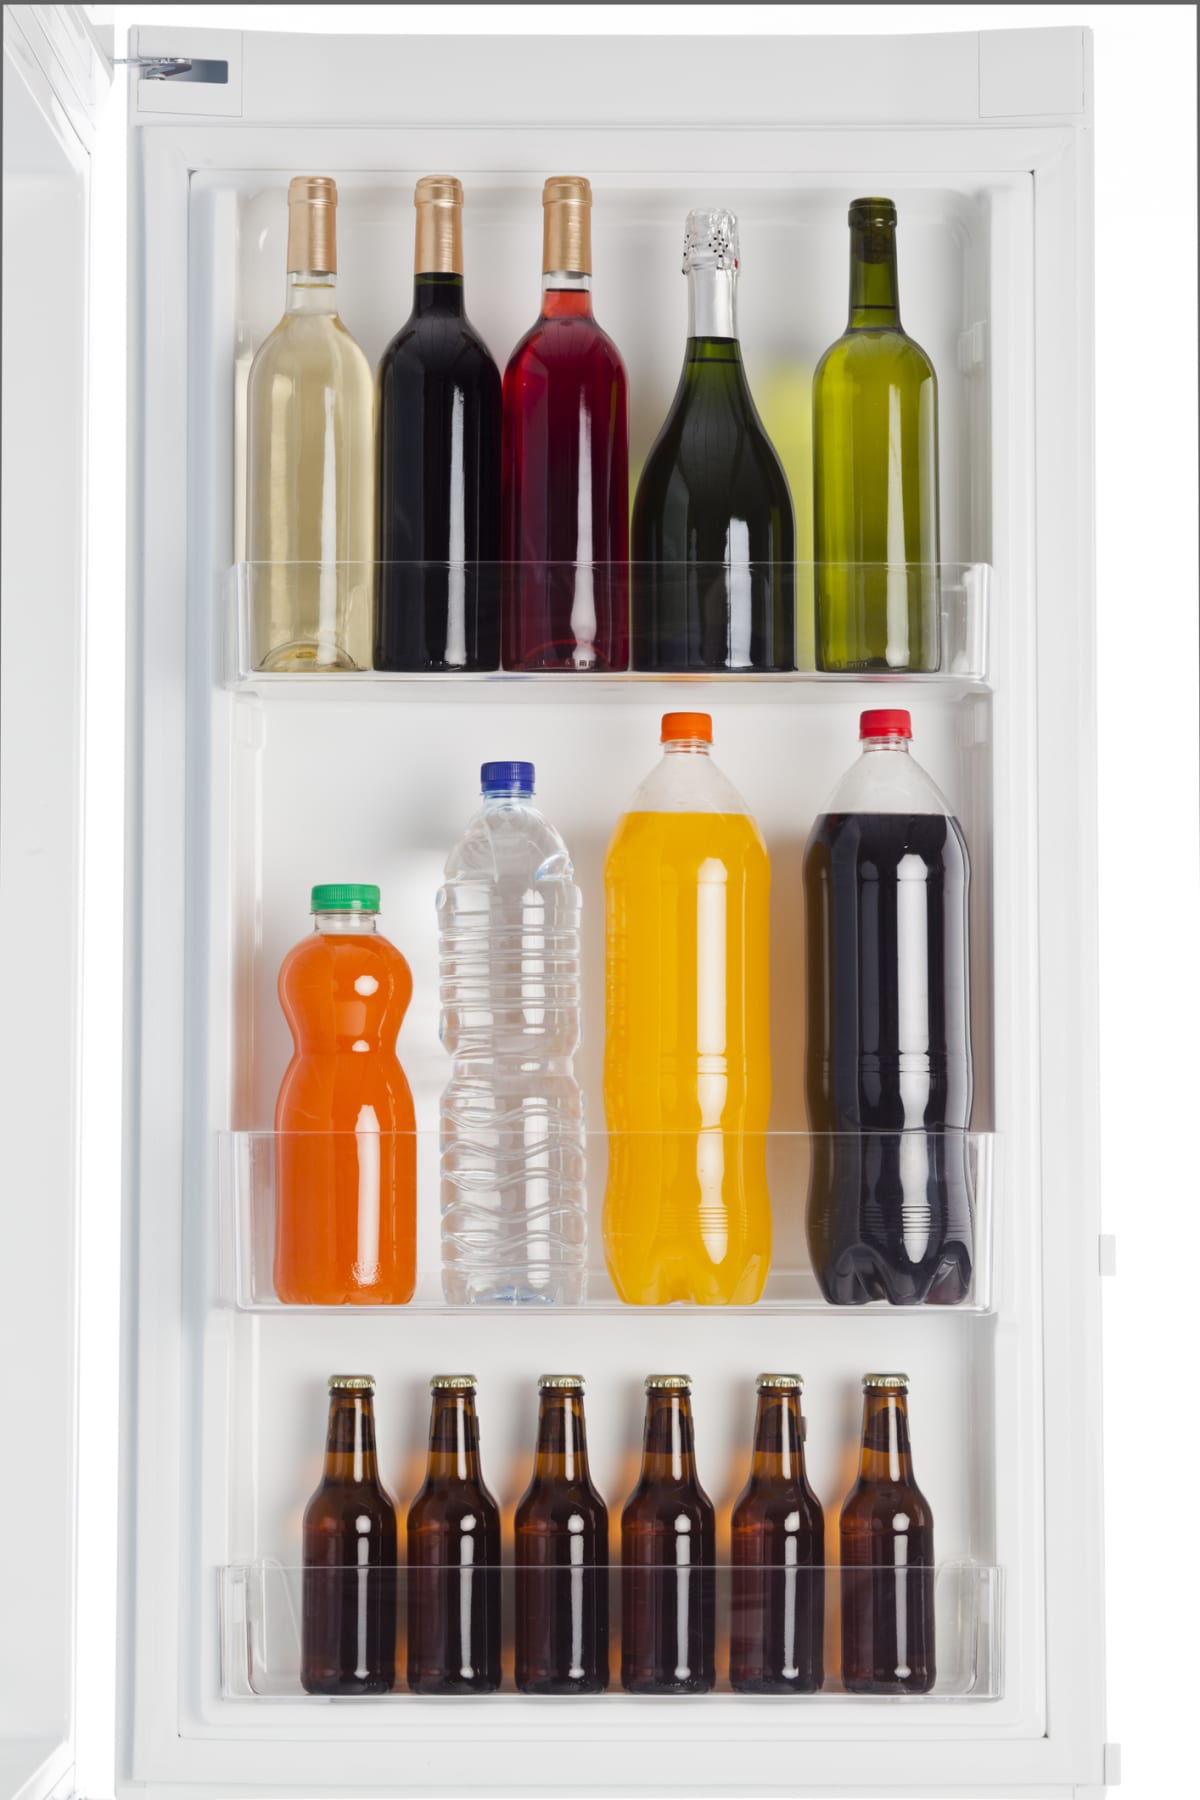 Assortment of drinks inside fridge